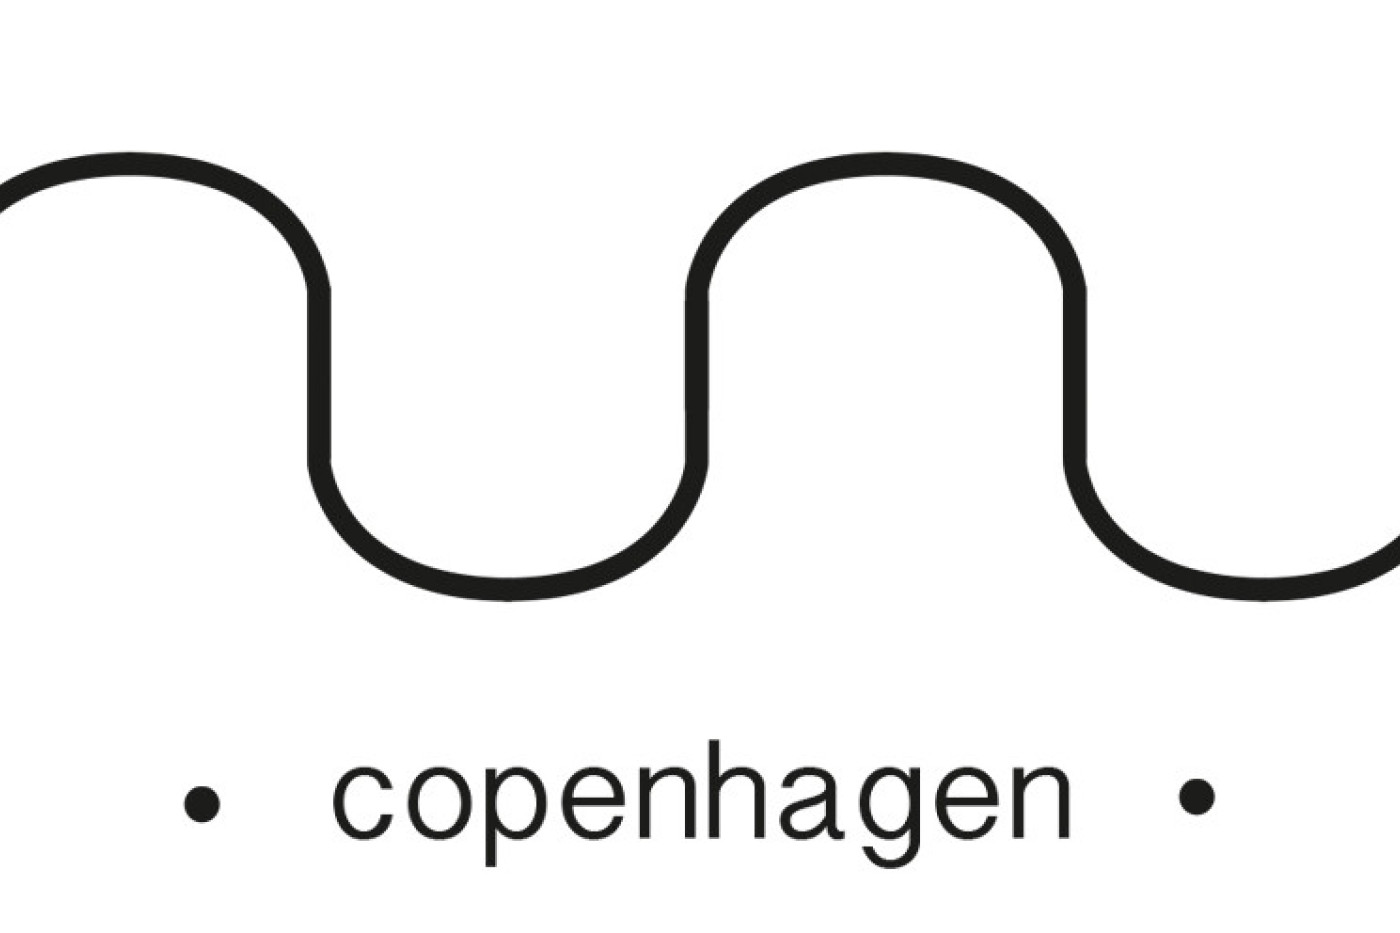 Nuni Copenhagen & Hunkøn Kollektionssalg